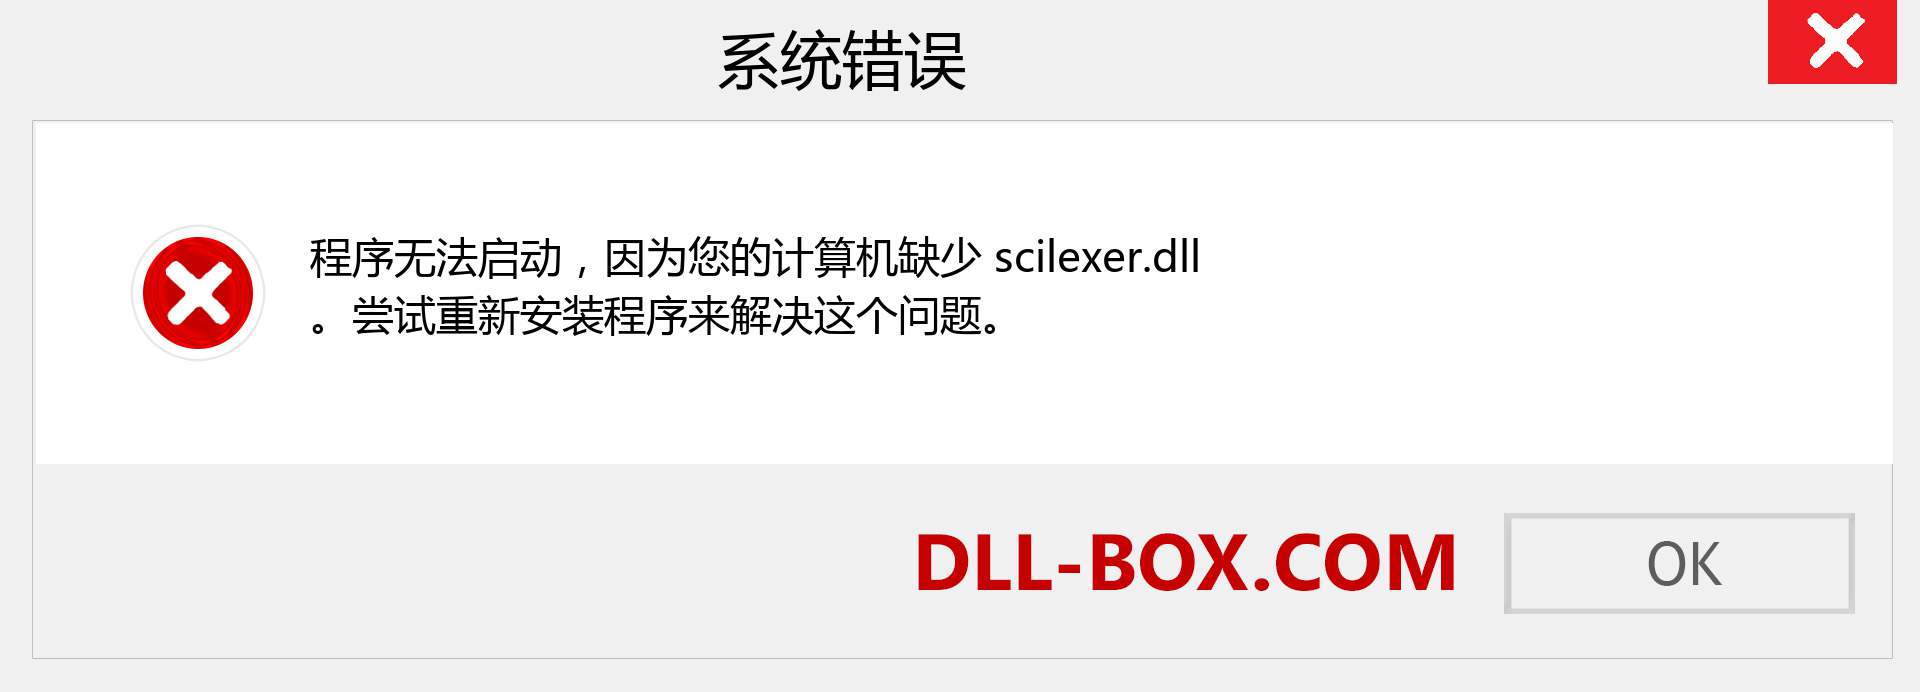 scilexer.dll 文件丢失？。 适用于 Windows 7、8、10 的下载 - 修复 Windows、照片、图像上的 scilexer dll 丢失错误